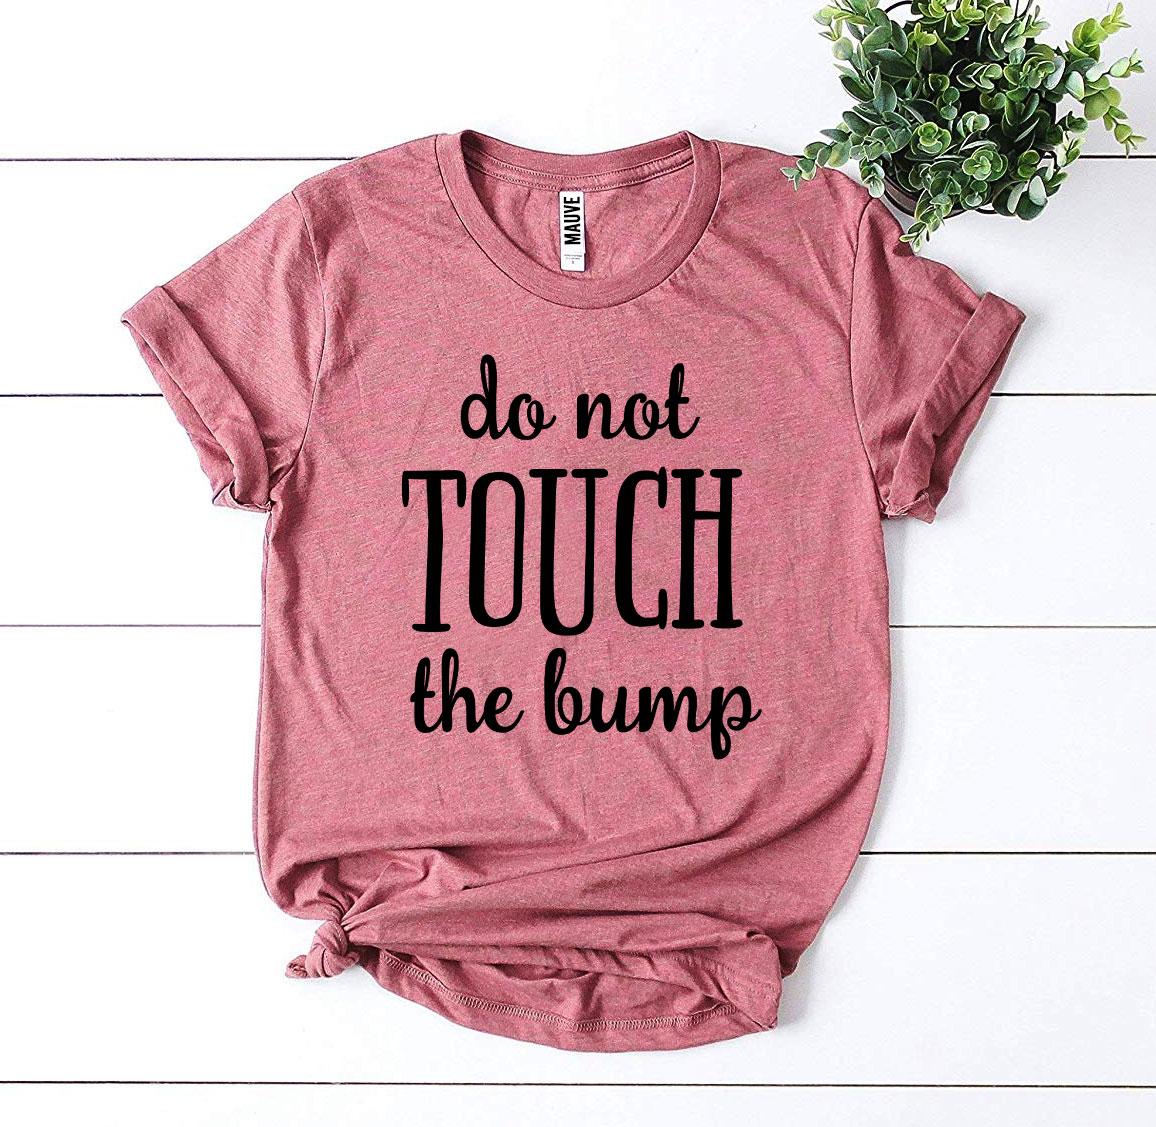 Do Not Touch The Bump T-shirt